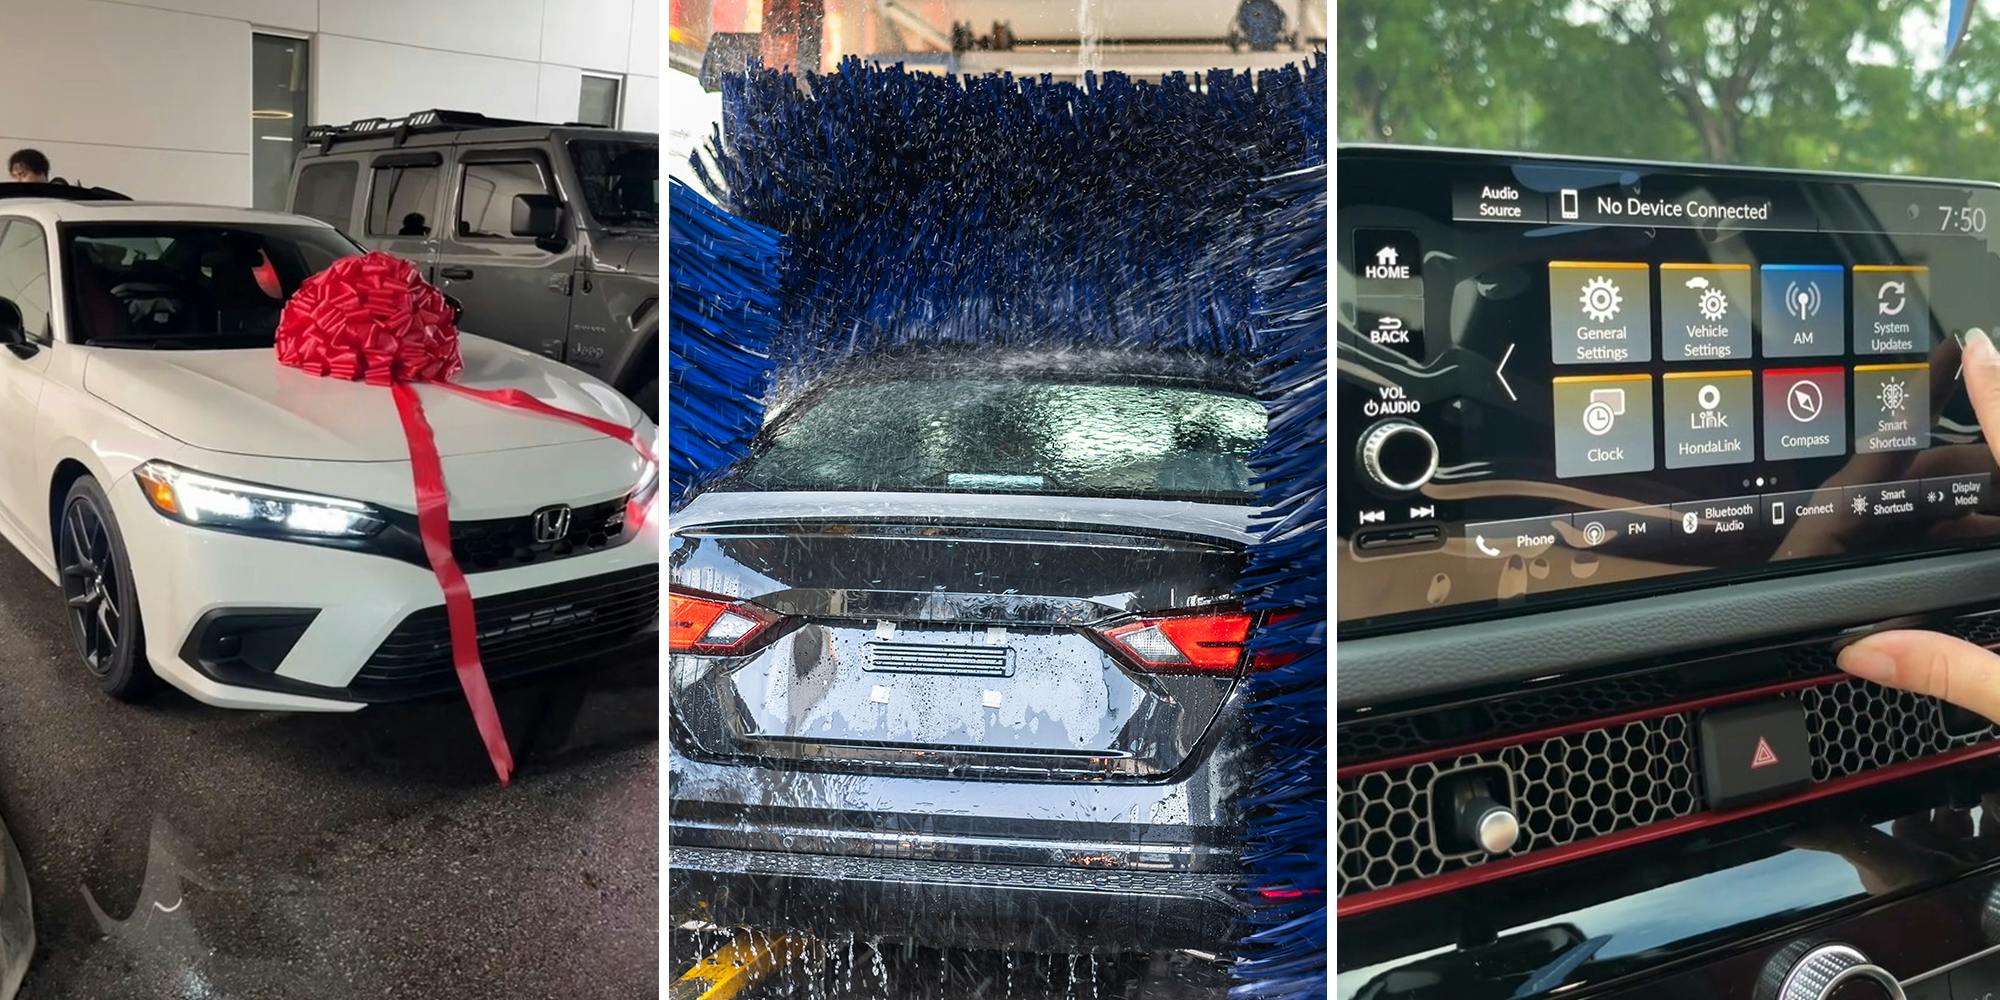 Woman warns against letting car dealership wash car